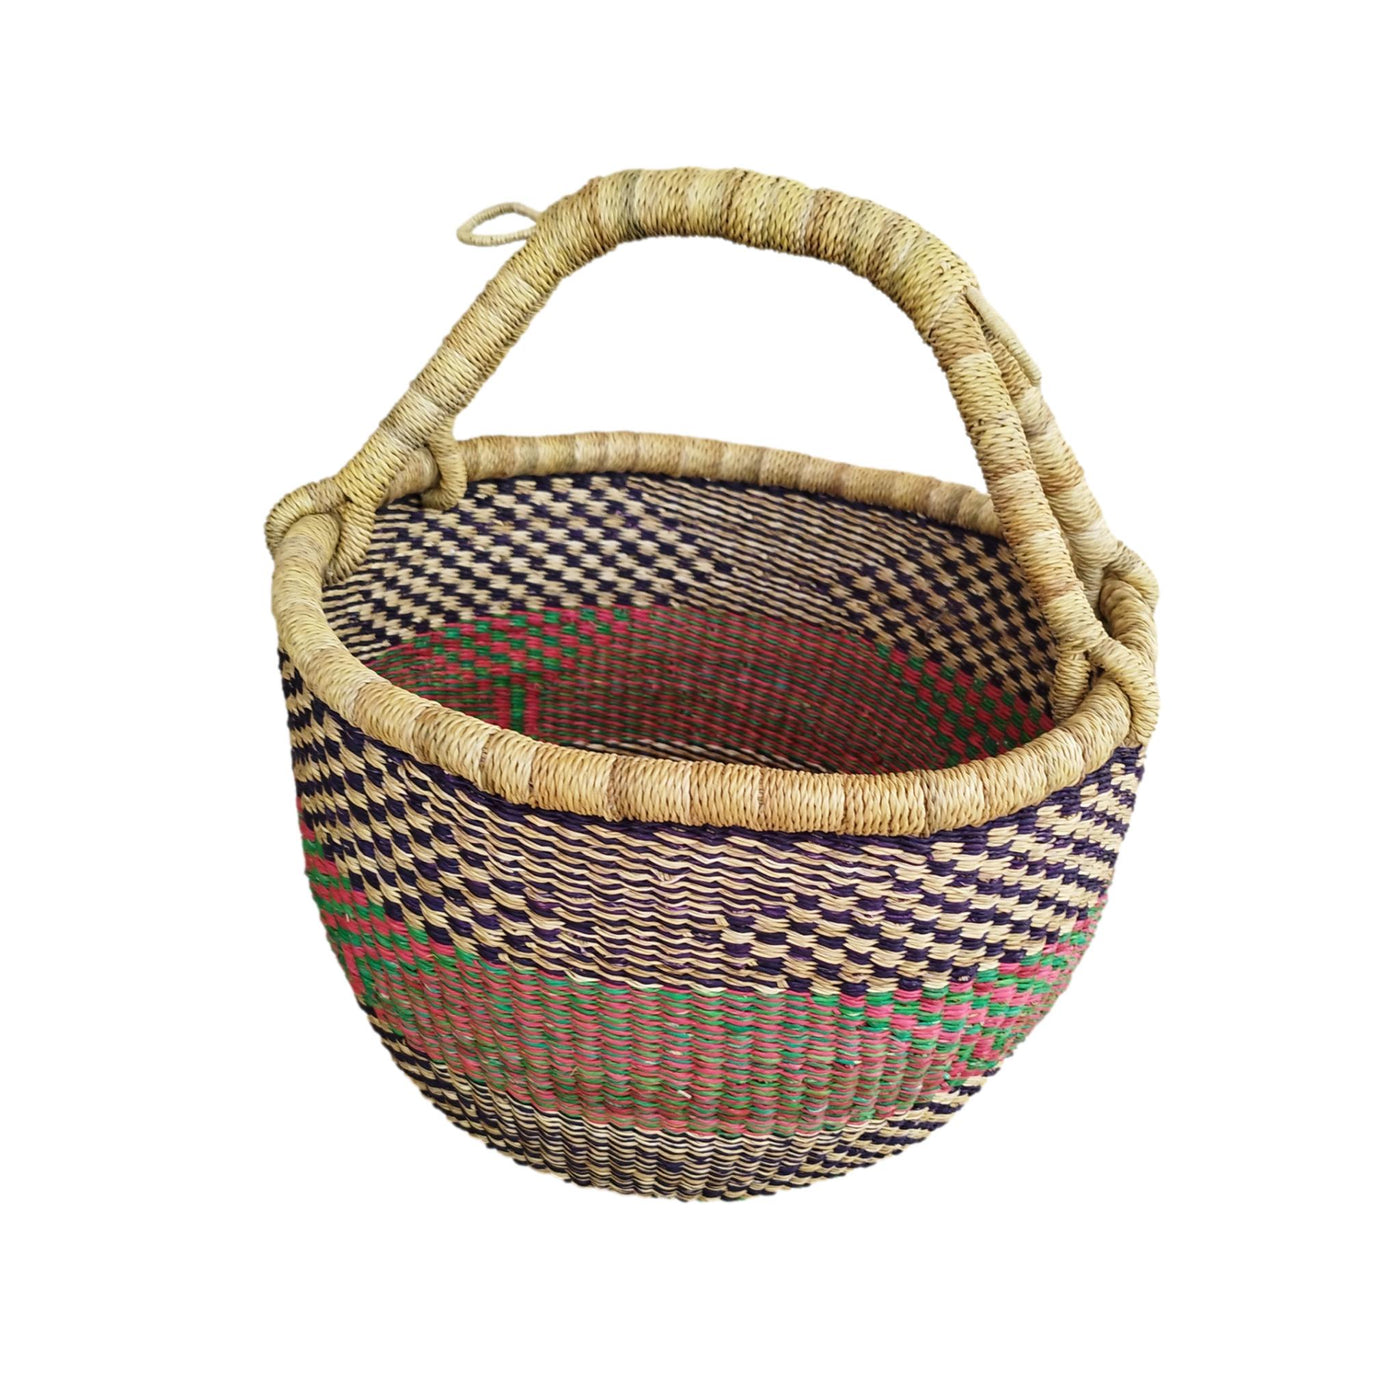 Ghana Market Basket | Harvest Basket |Shopping Basket | Fruit Basket | Picnic Basket | Beach Basket